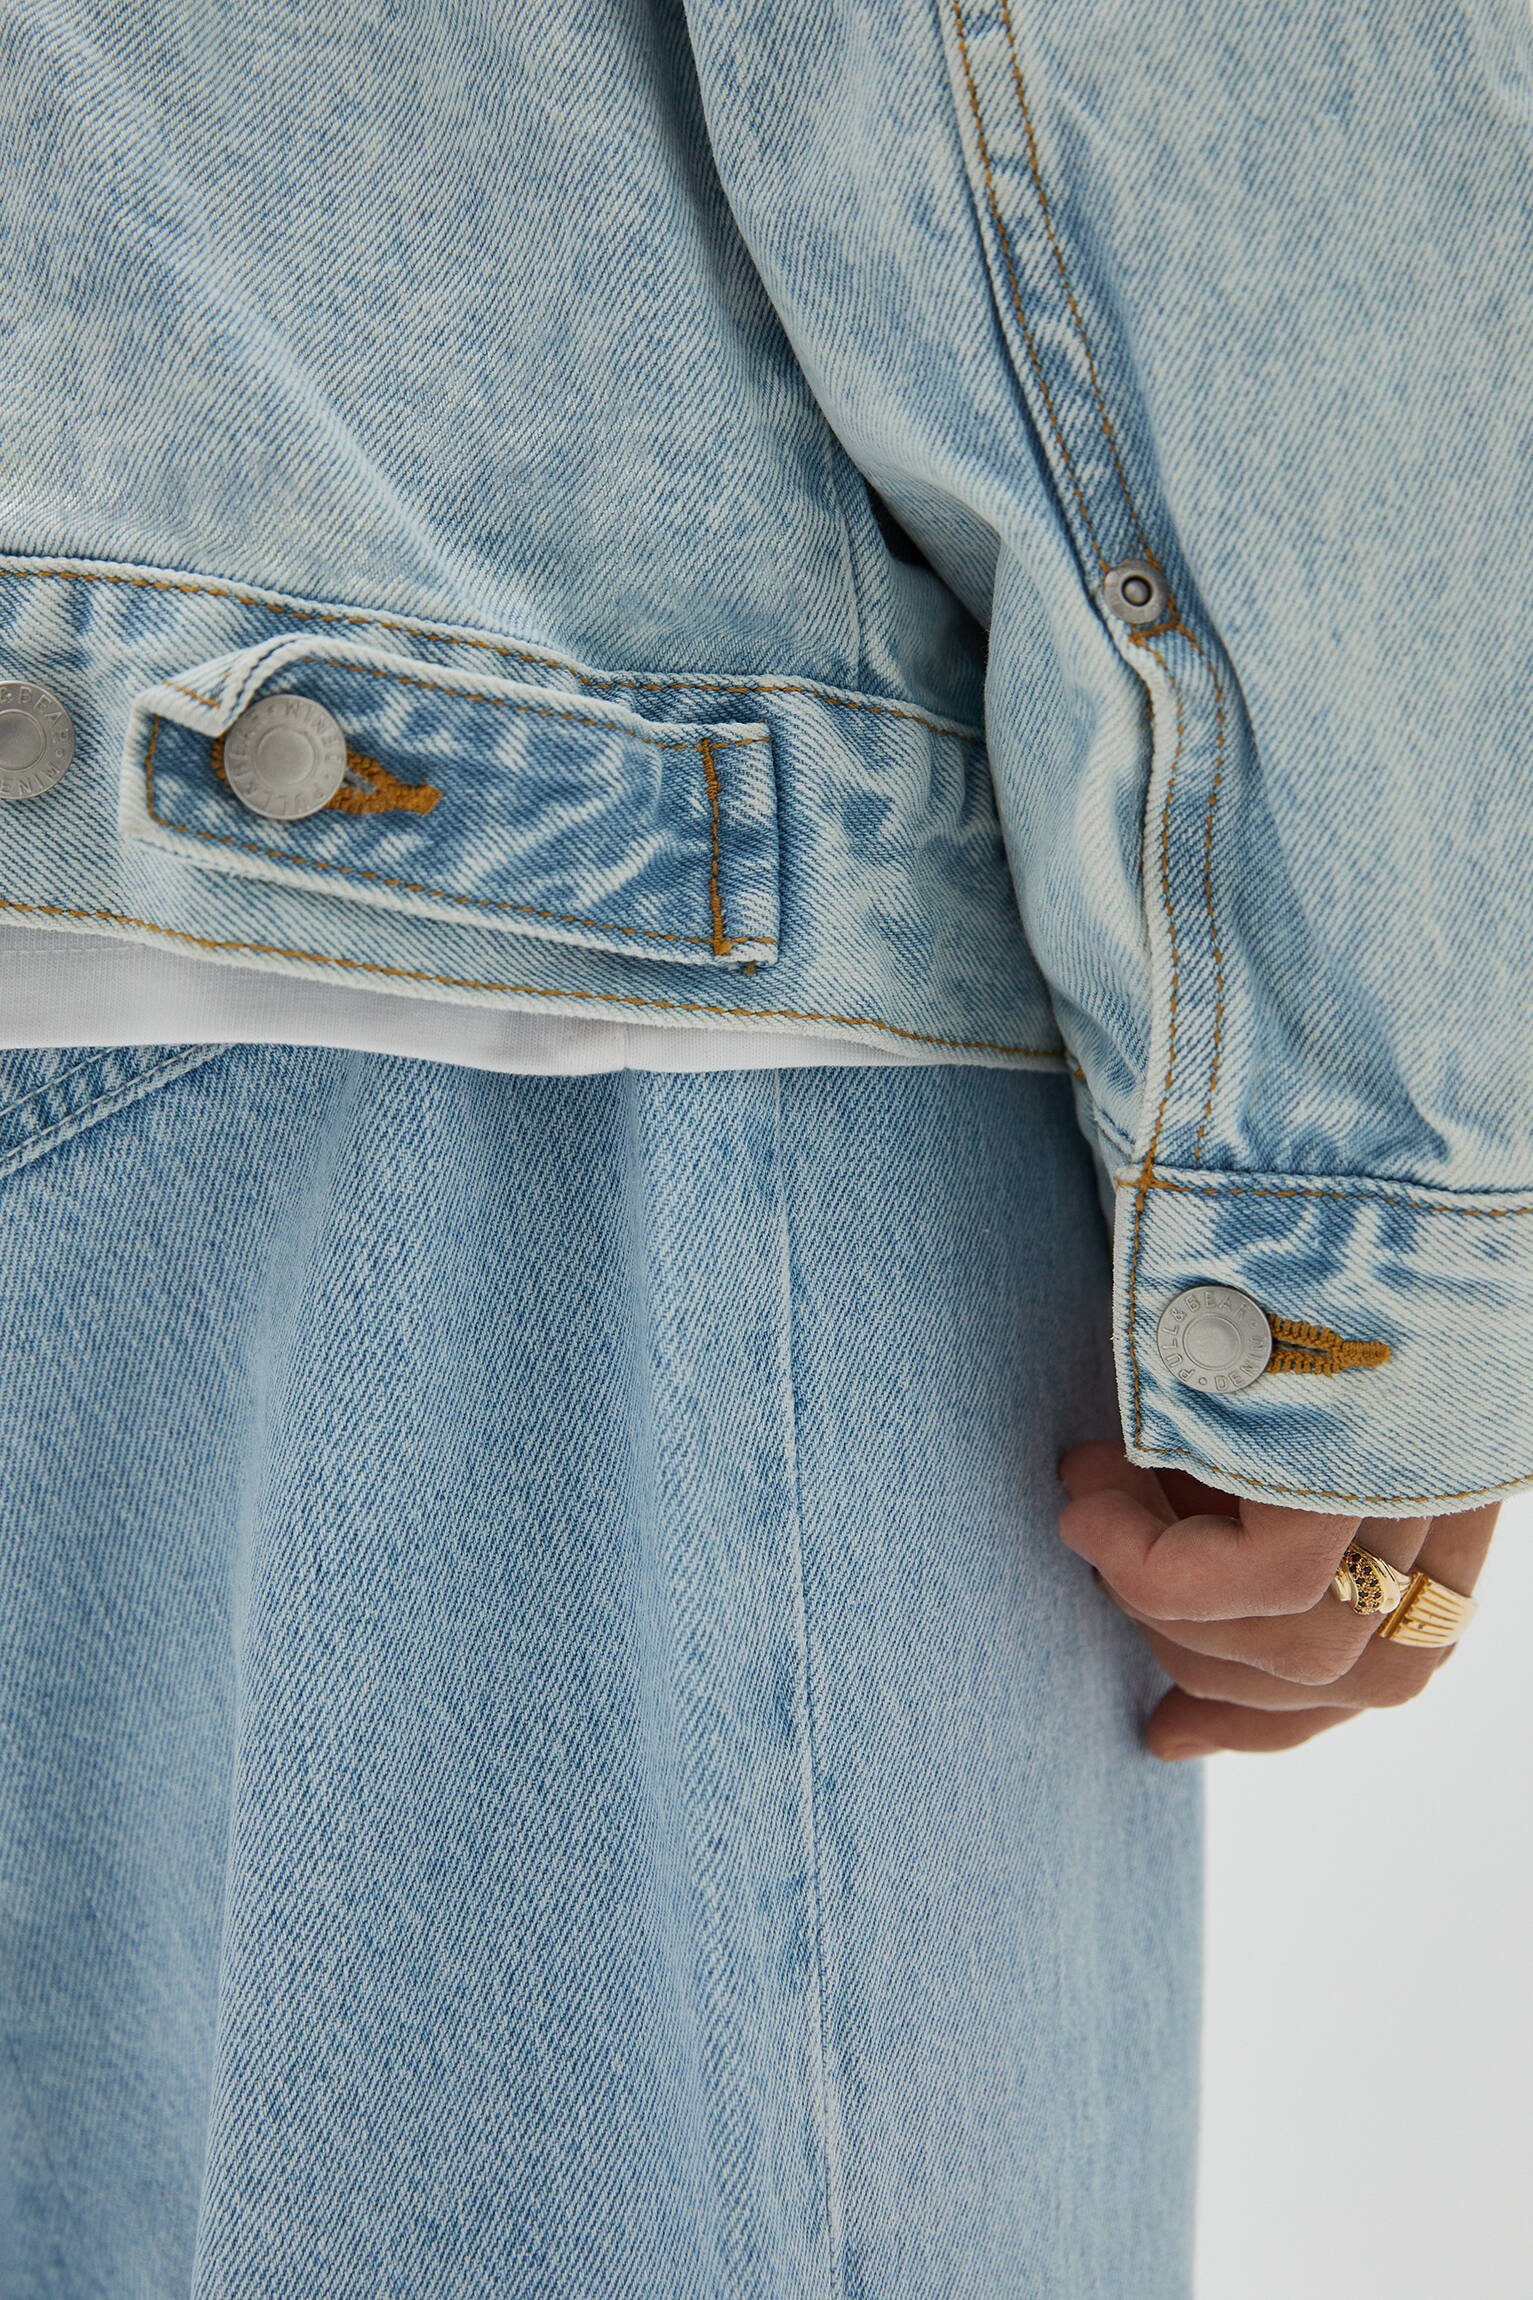 Базовая джинсовая куртка синего цвета СВЕТЛЫЙ ИНДИГО Pull & Bear